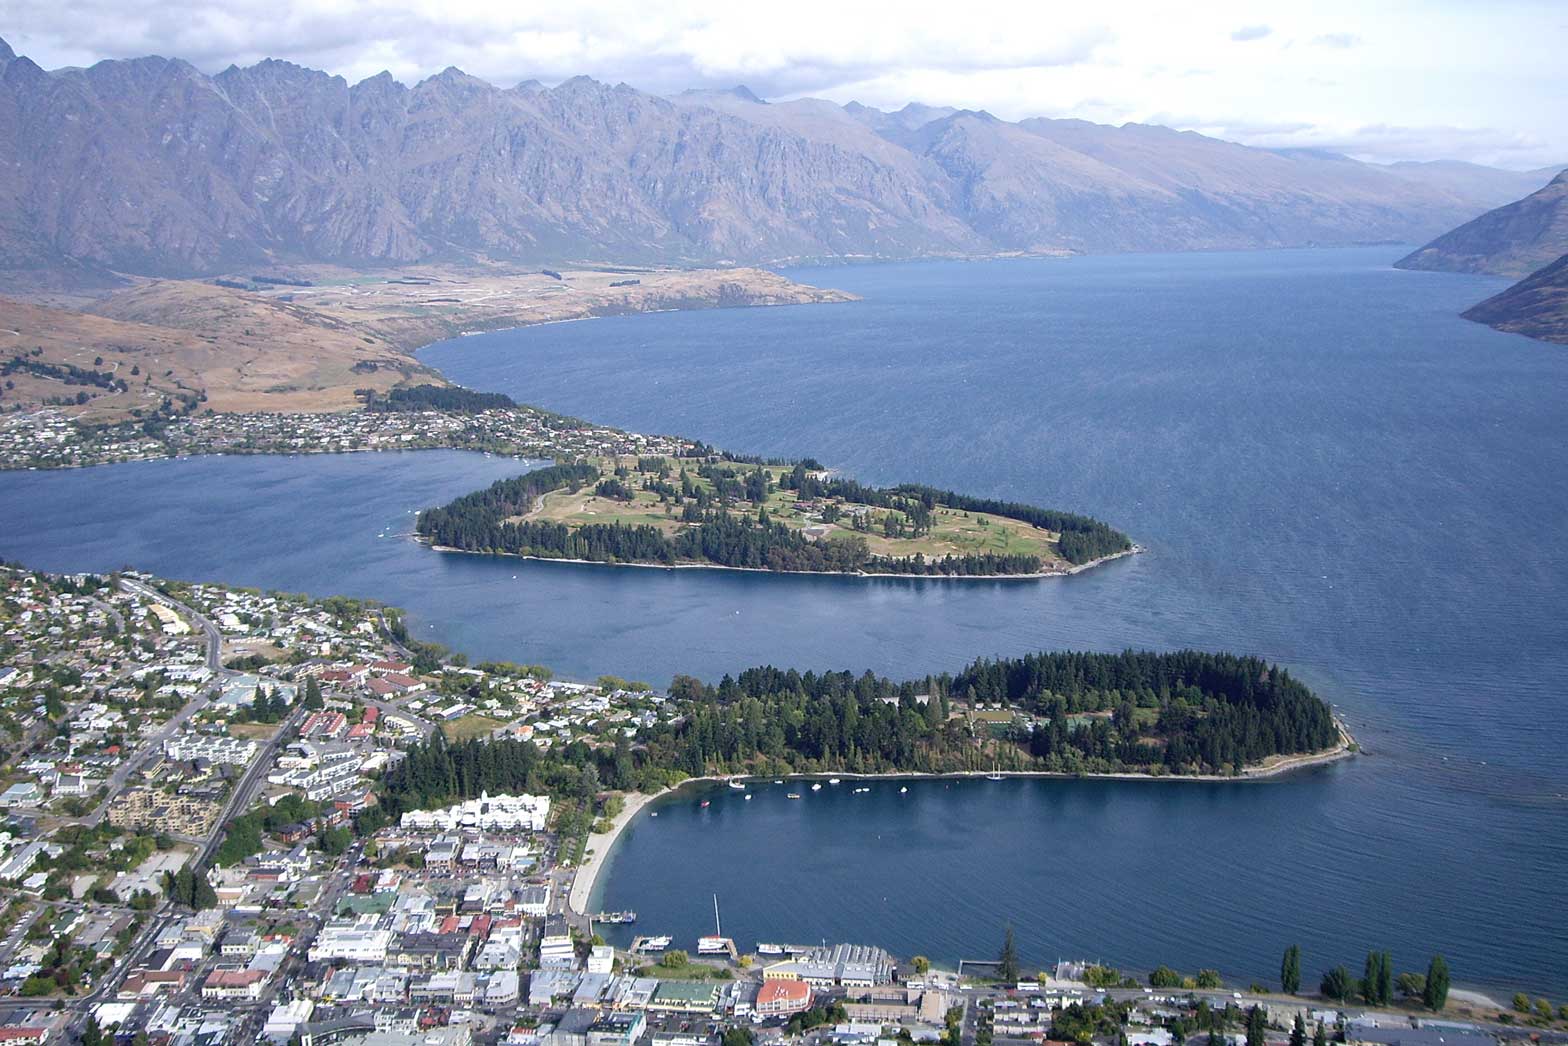 Top Down Adventure - Motorcycle Tour in New Zealand, Ayres Adventures